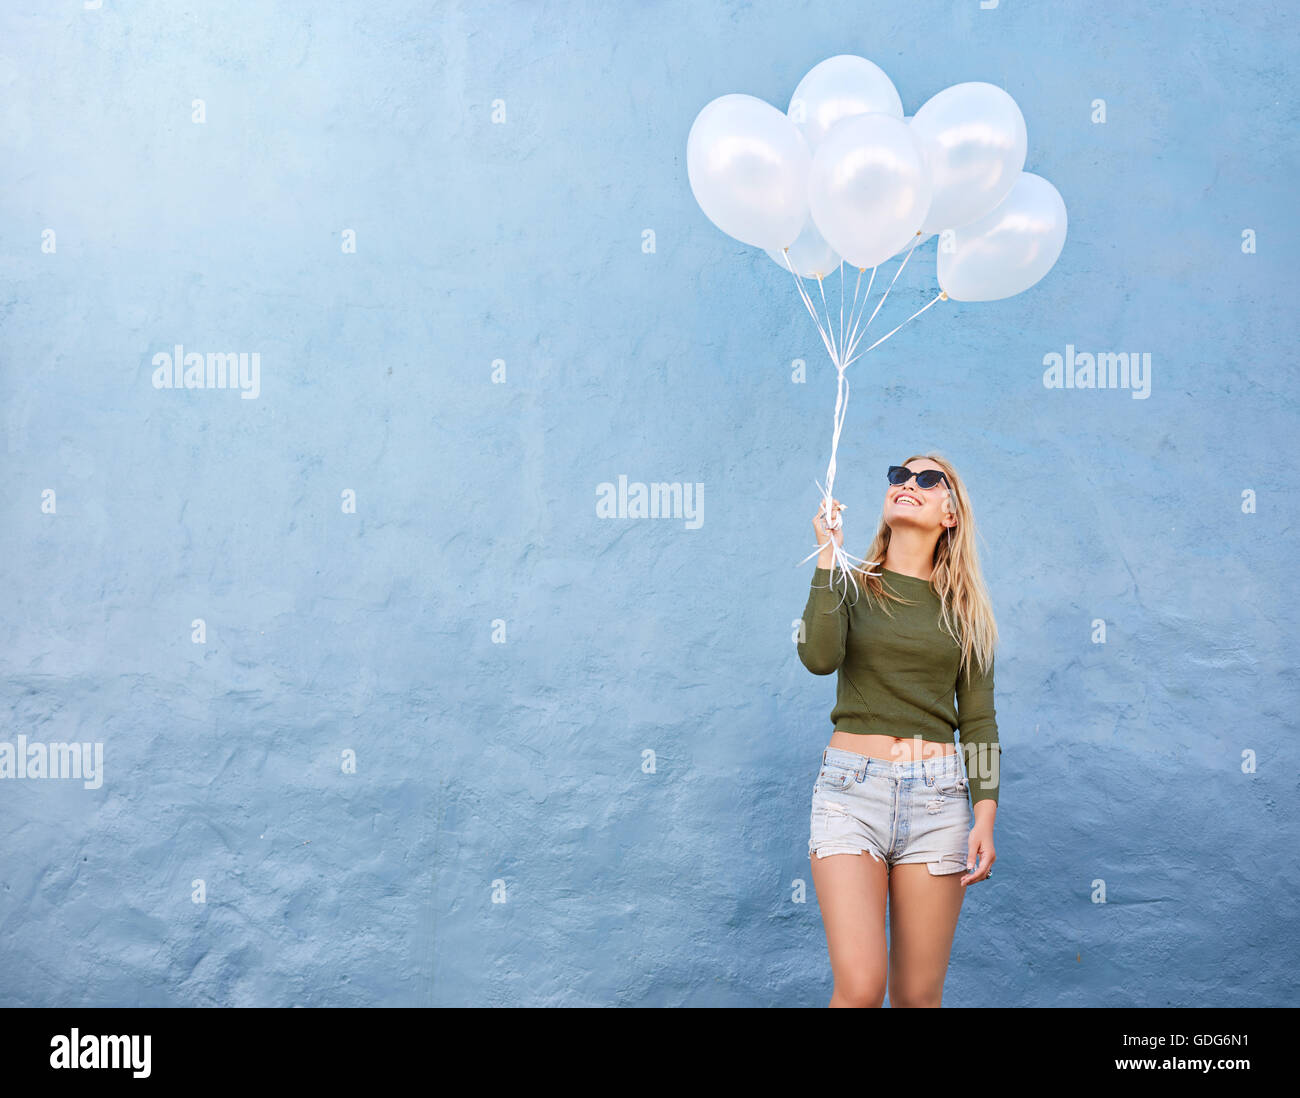 Schuss der glückliche junge Frau mit Haufen Luftballons gegen blauen Wand. Attraktives weibliches Modell in stilvollen Casuals halten weiße bal Stockfoto